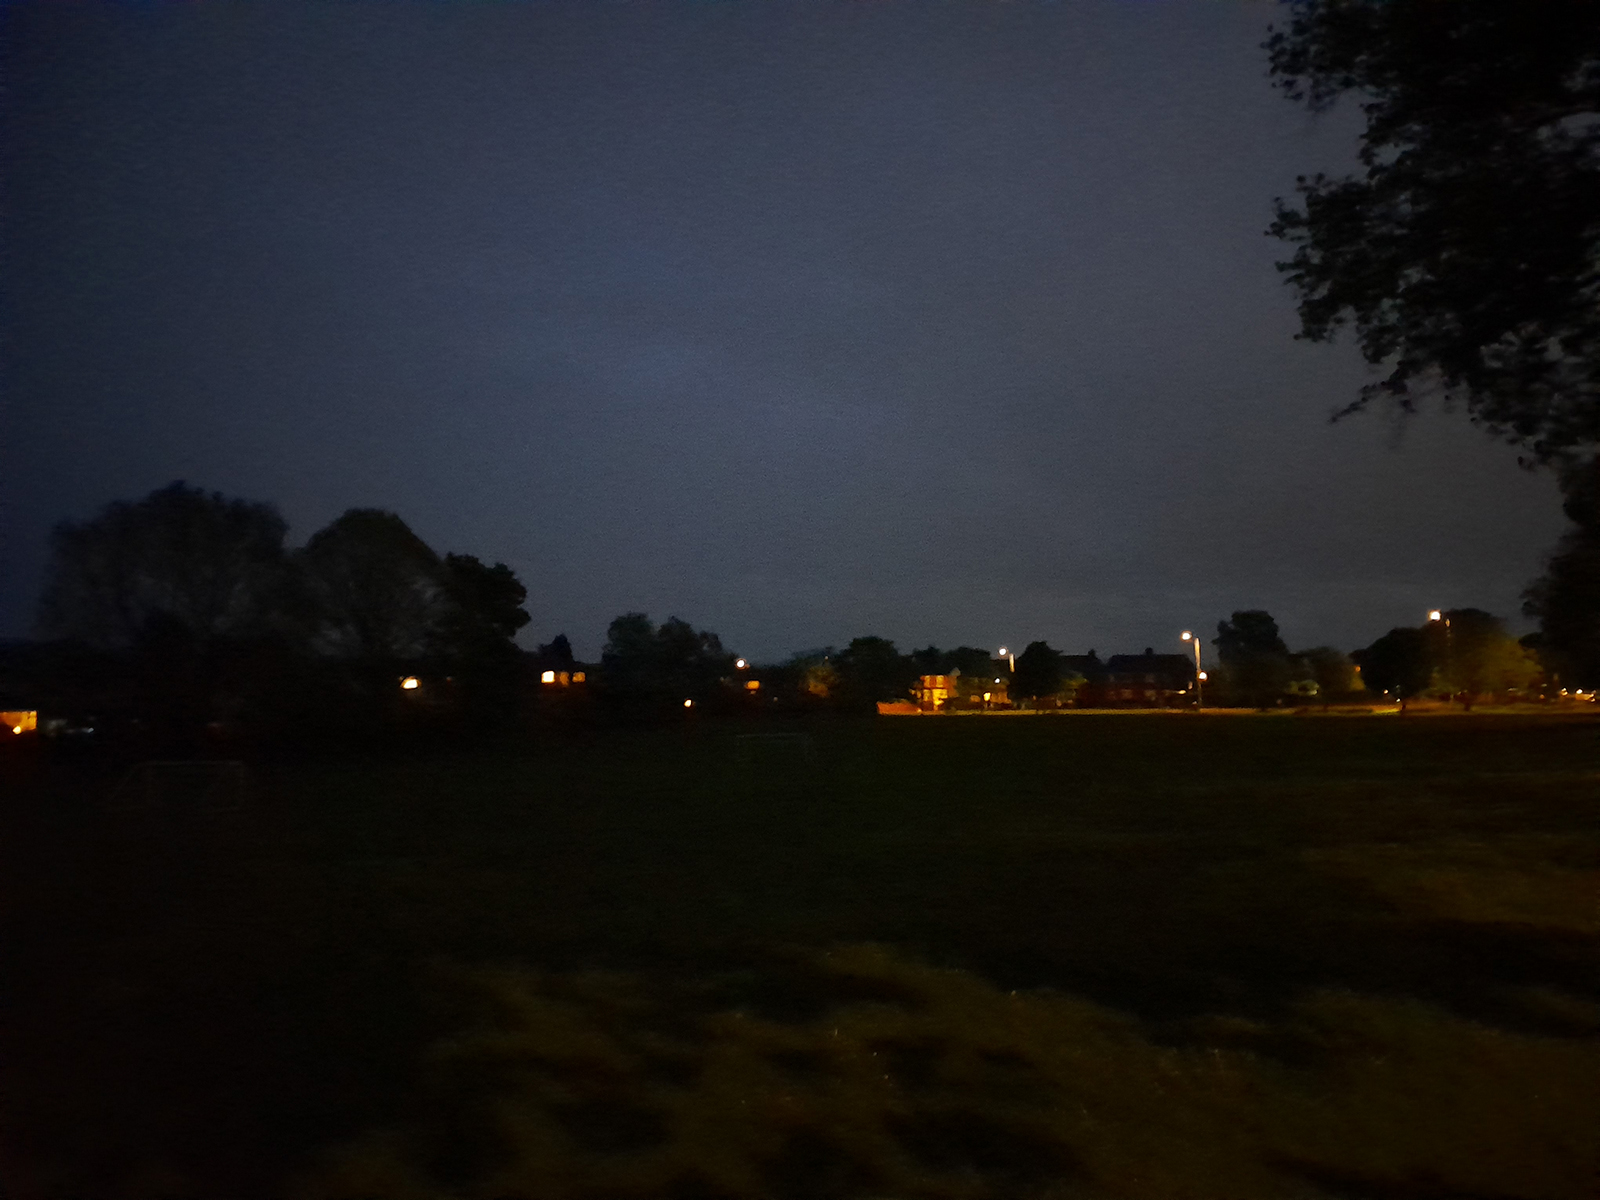 Samsung Galaxy A13 camera sample showing a park at night